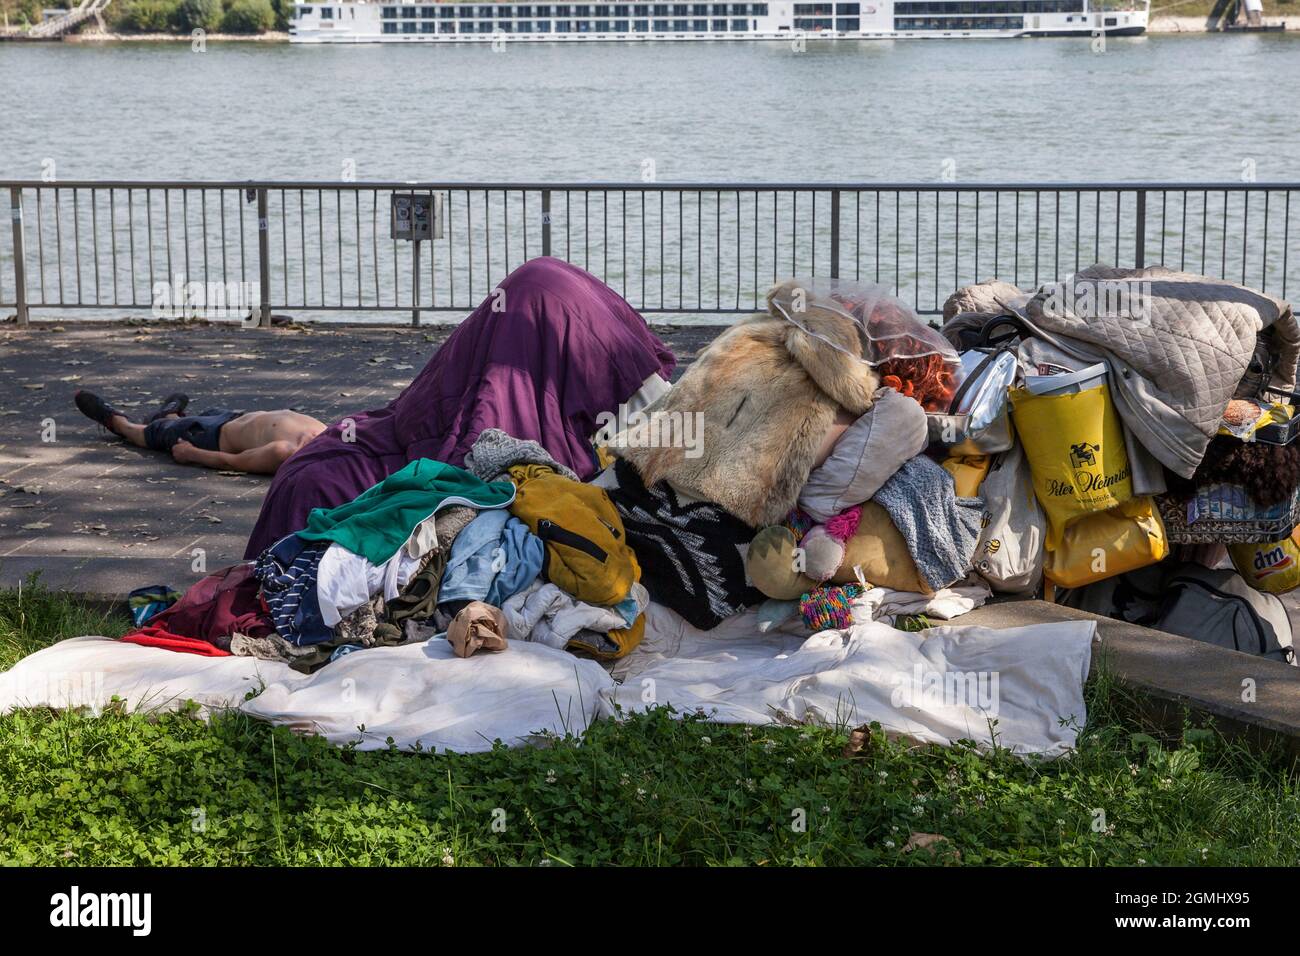 Obdachlose mit ihren Besitztümern am Rheinufer, Köln, Deutschland. Ein Mann liegt auf dem Bürgersteig, eine Frau hockt mit einem Pelzumhang auf ihm Stockfoto